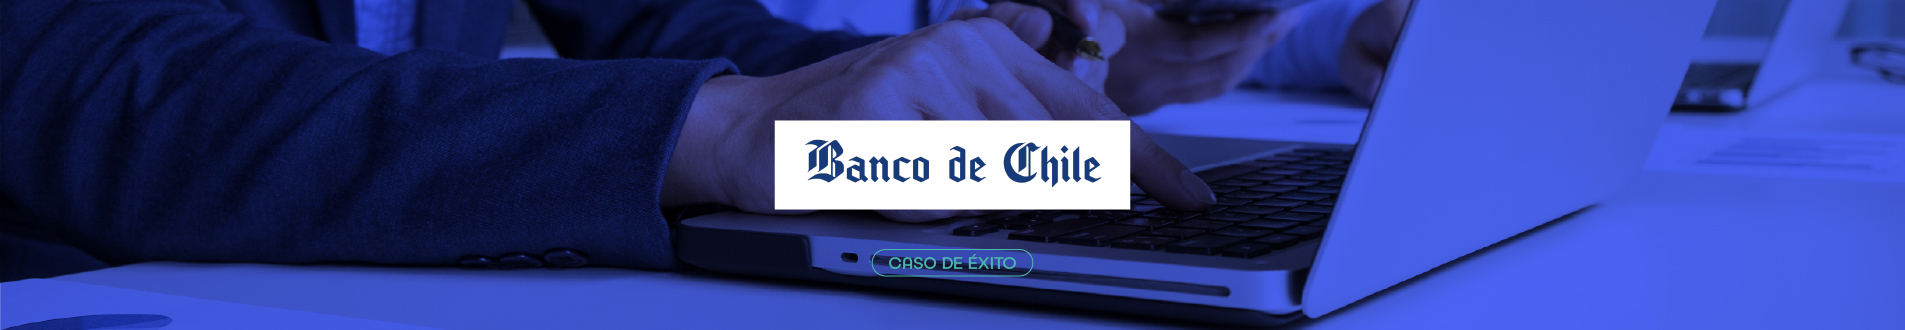 TCIT casos de éxito Banco de chile